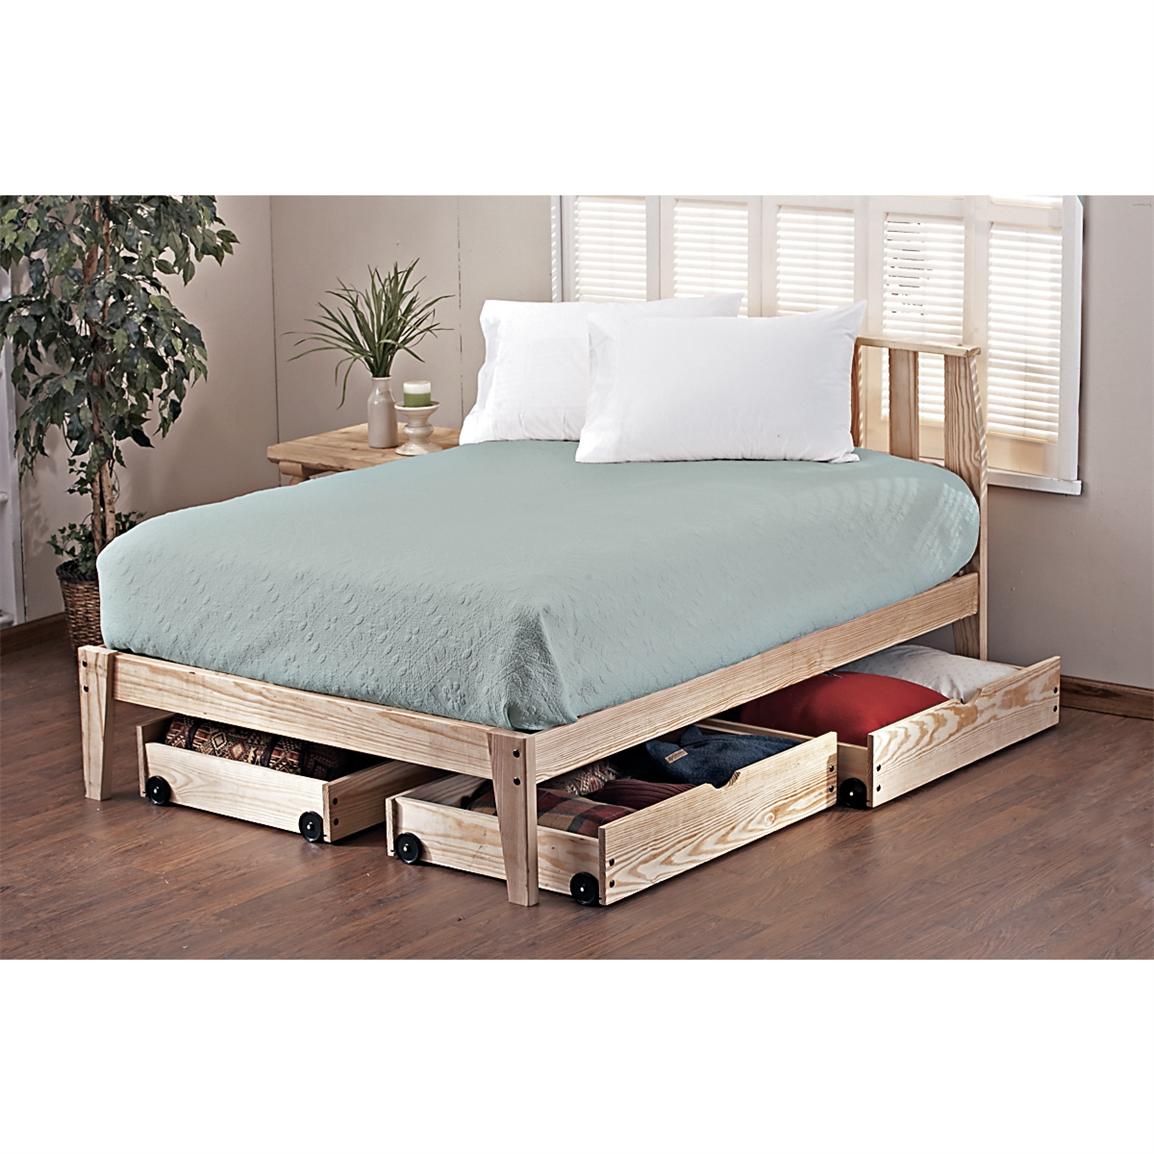 Pine Rock Platform Queen Bed Frame - 113114, Bedroom Sets ...